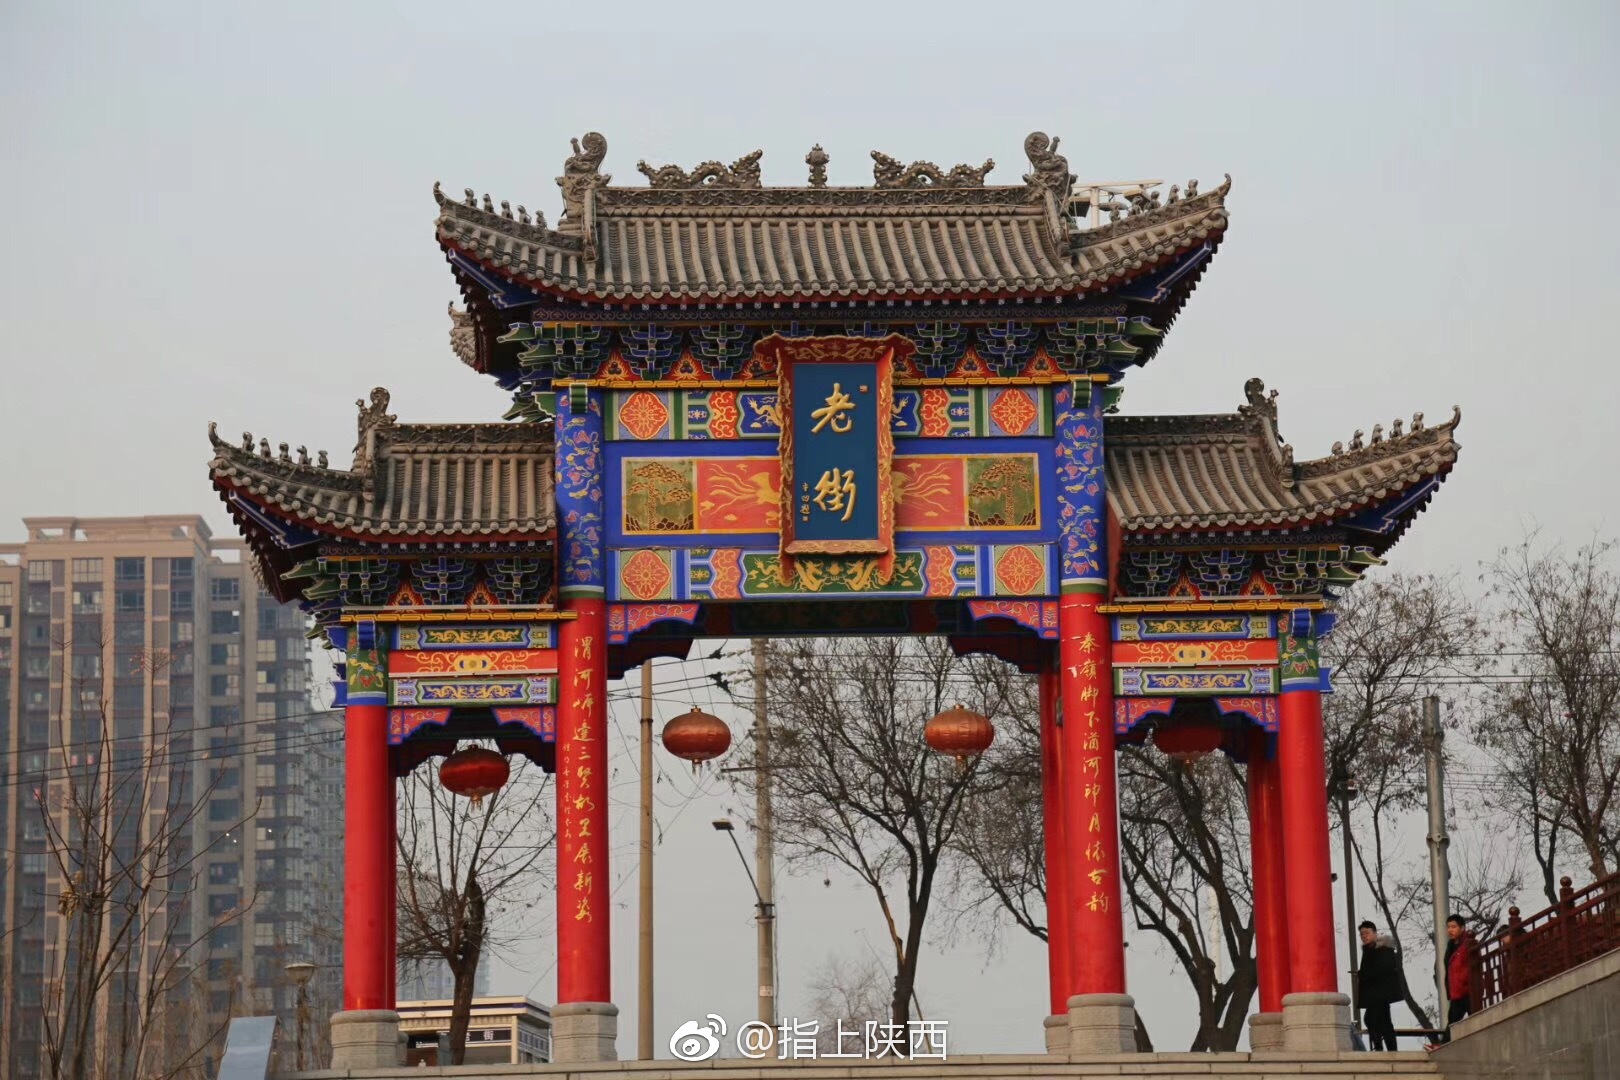 渭南老街以明清民居中国传统建筑风格为精髓,蕴含丰富的陕西文化